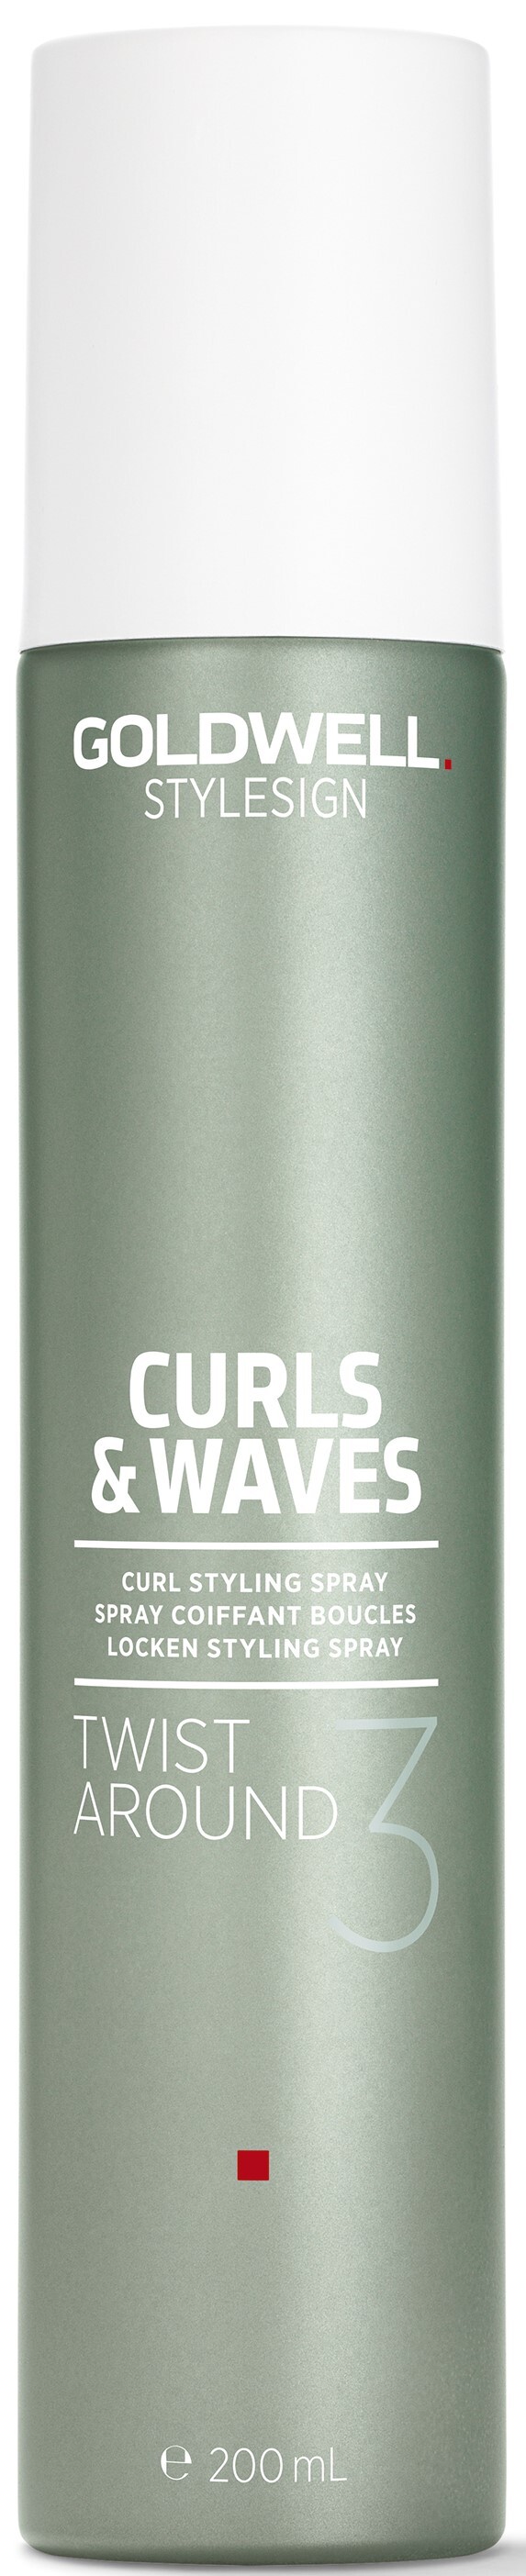 Goldwell Curls & Waves Twist Around 200 ml